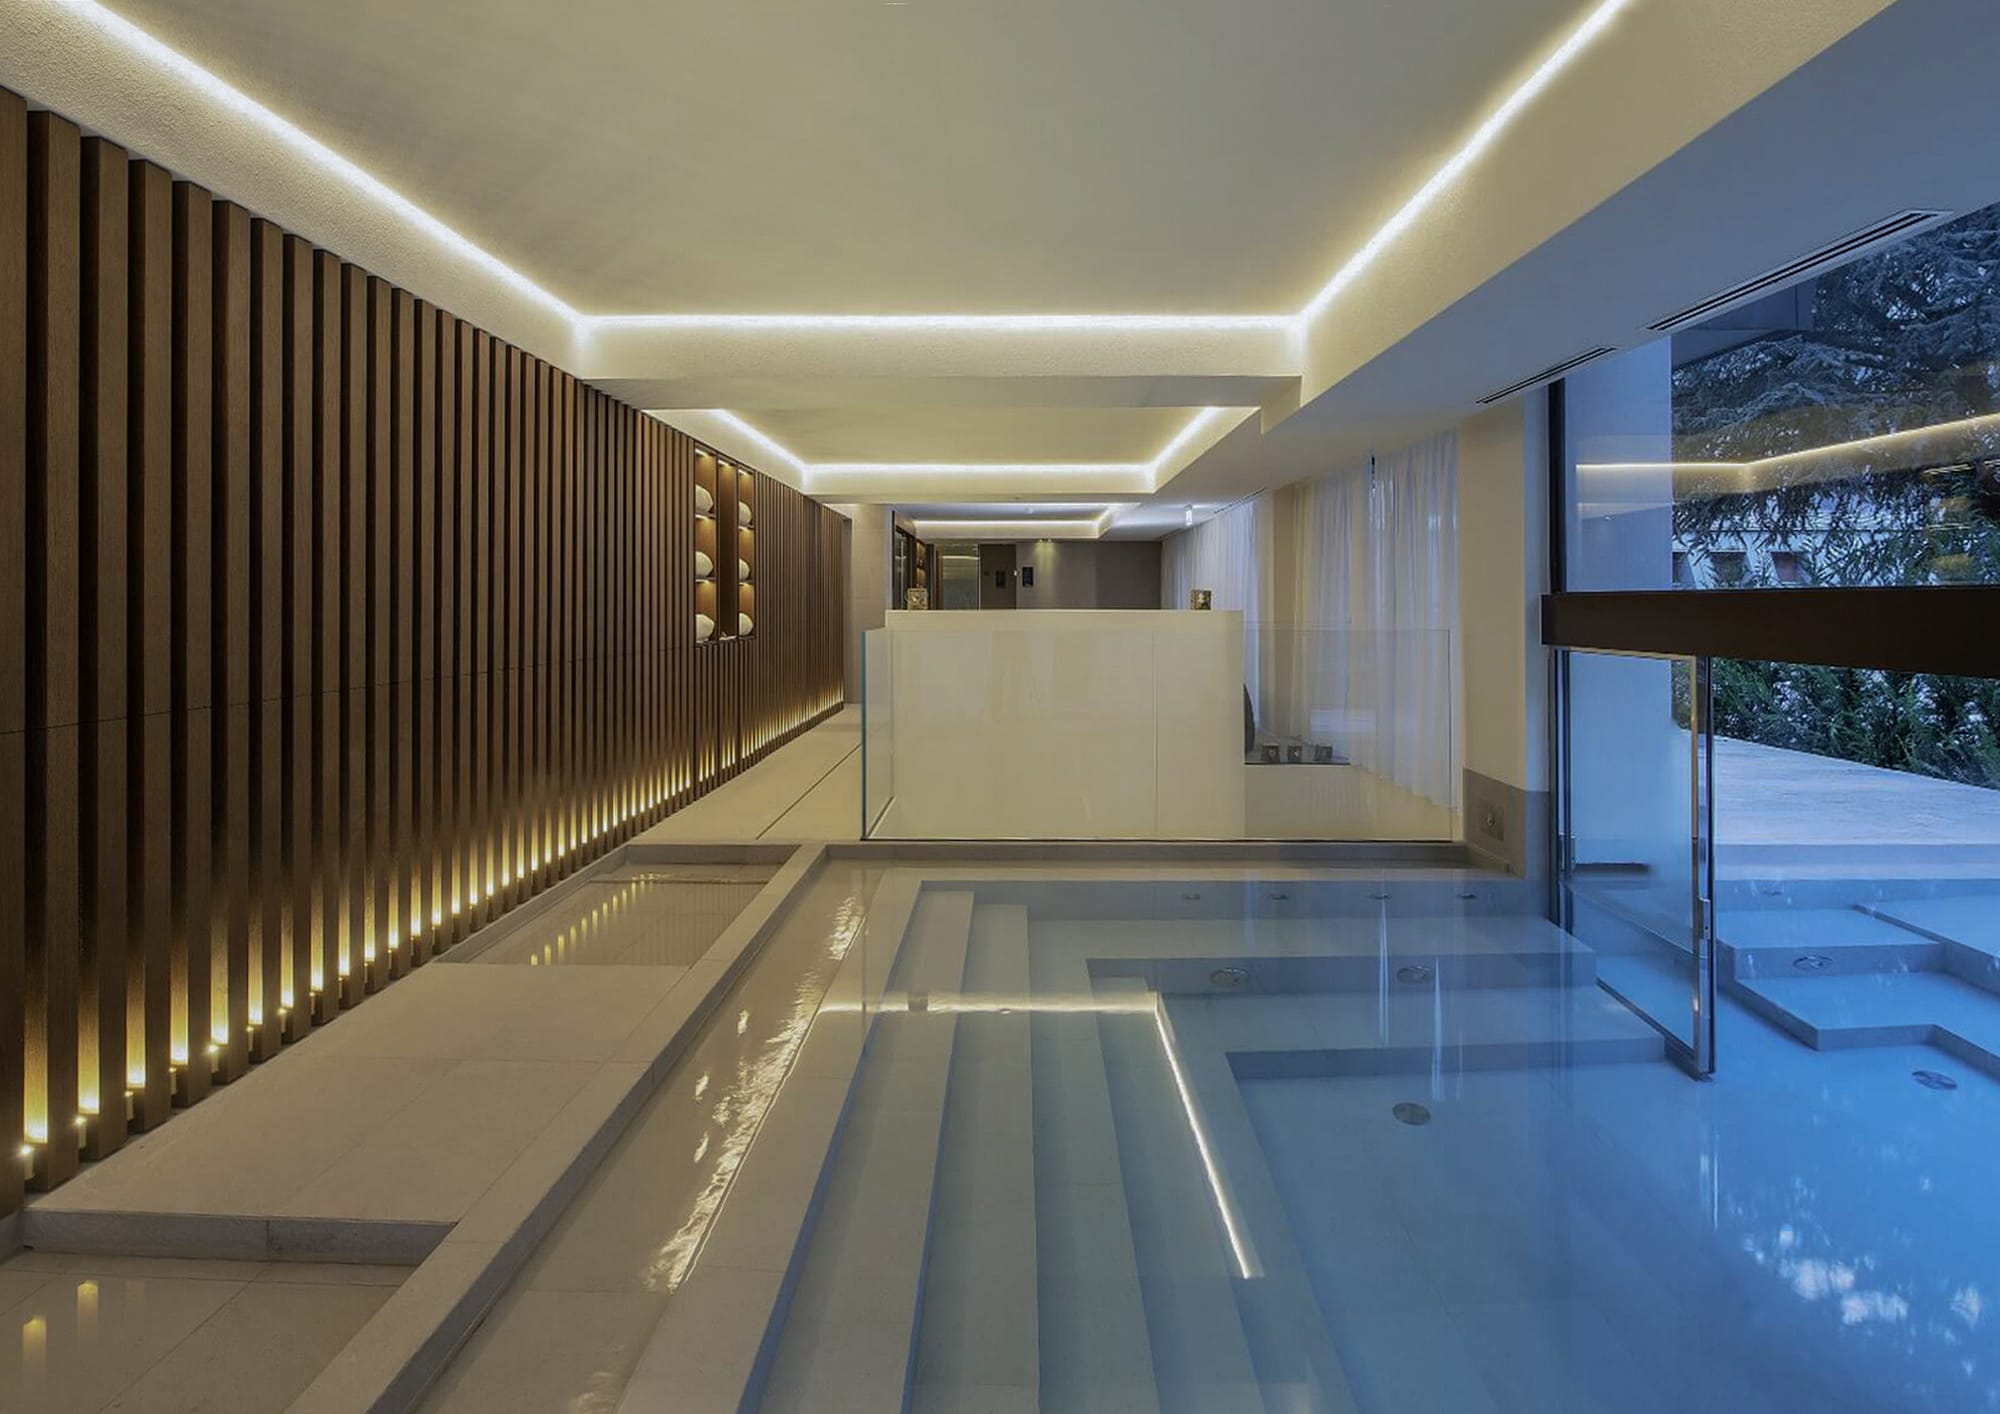 Le Massif Hotel & Spa, ambiente piscina con grande infisso separatore fra interno ed esterno